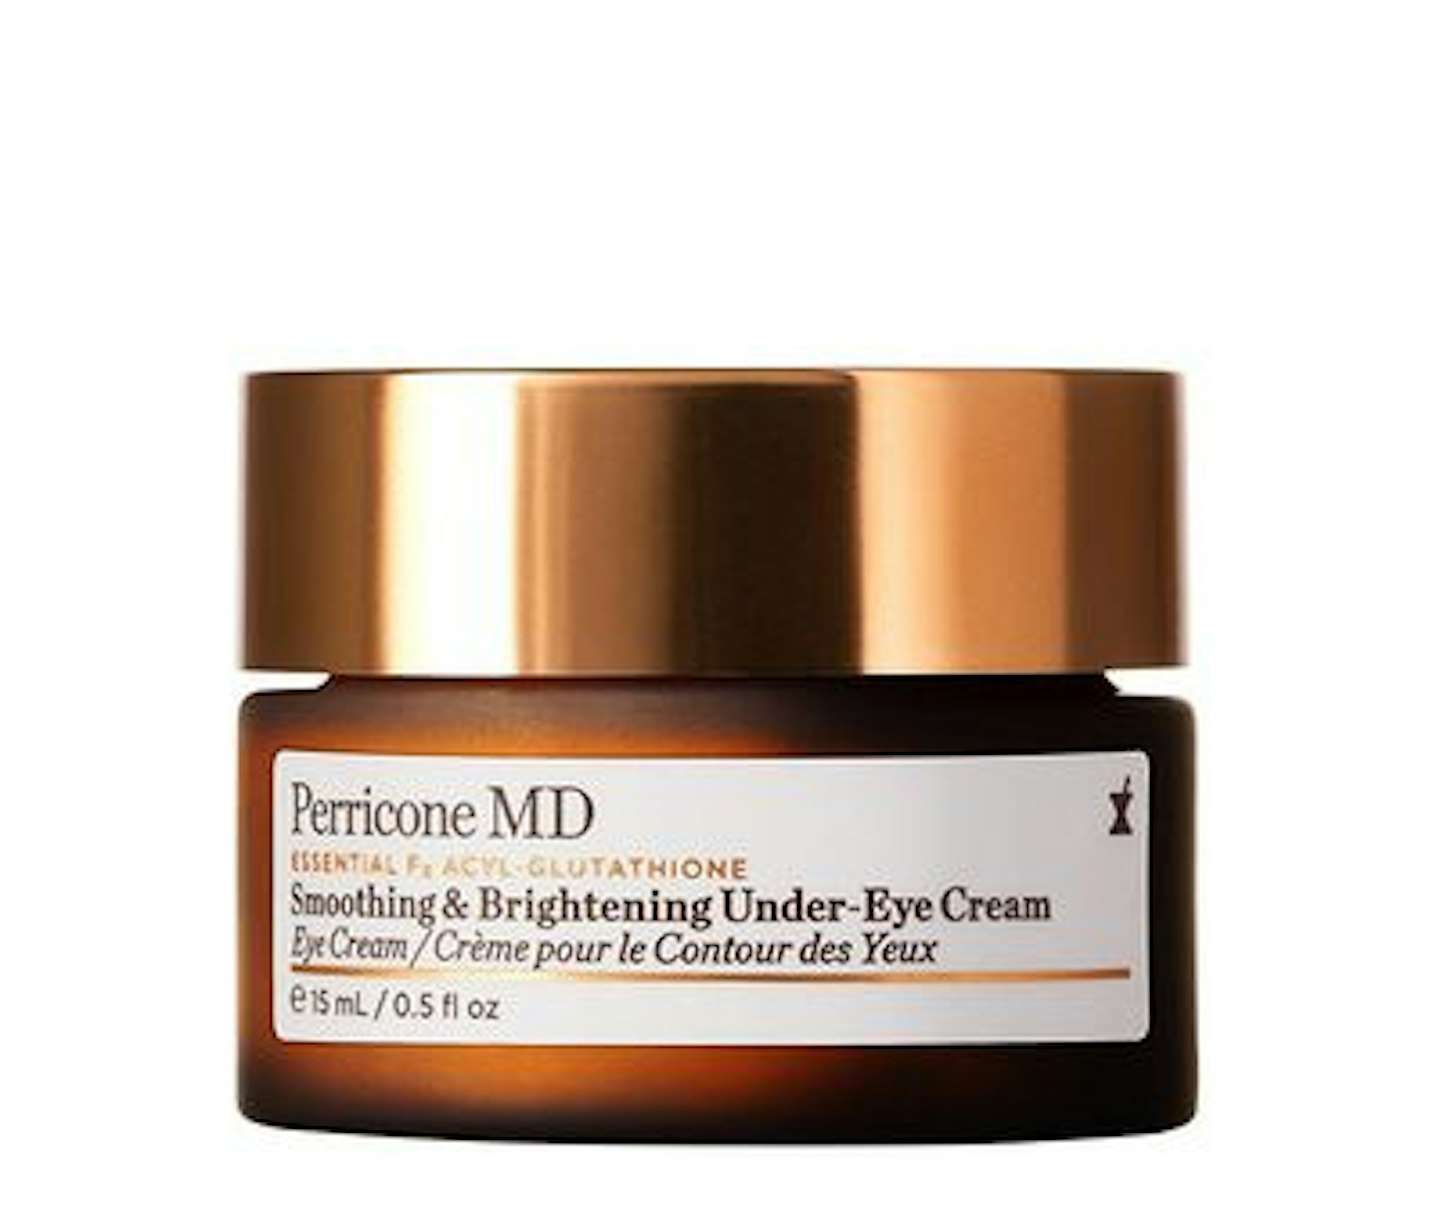 Perricone MD Essential Fx Acyl-Glutathione Smoothing & Brightening Under-Eye Cream, 15m